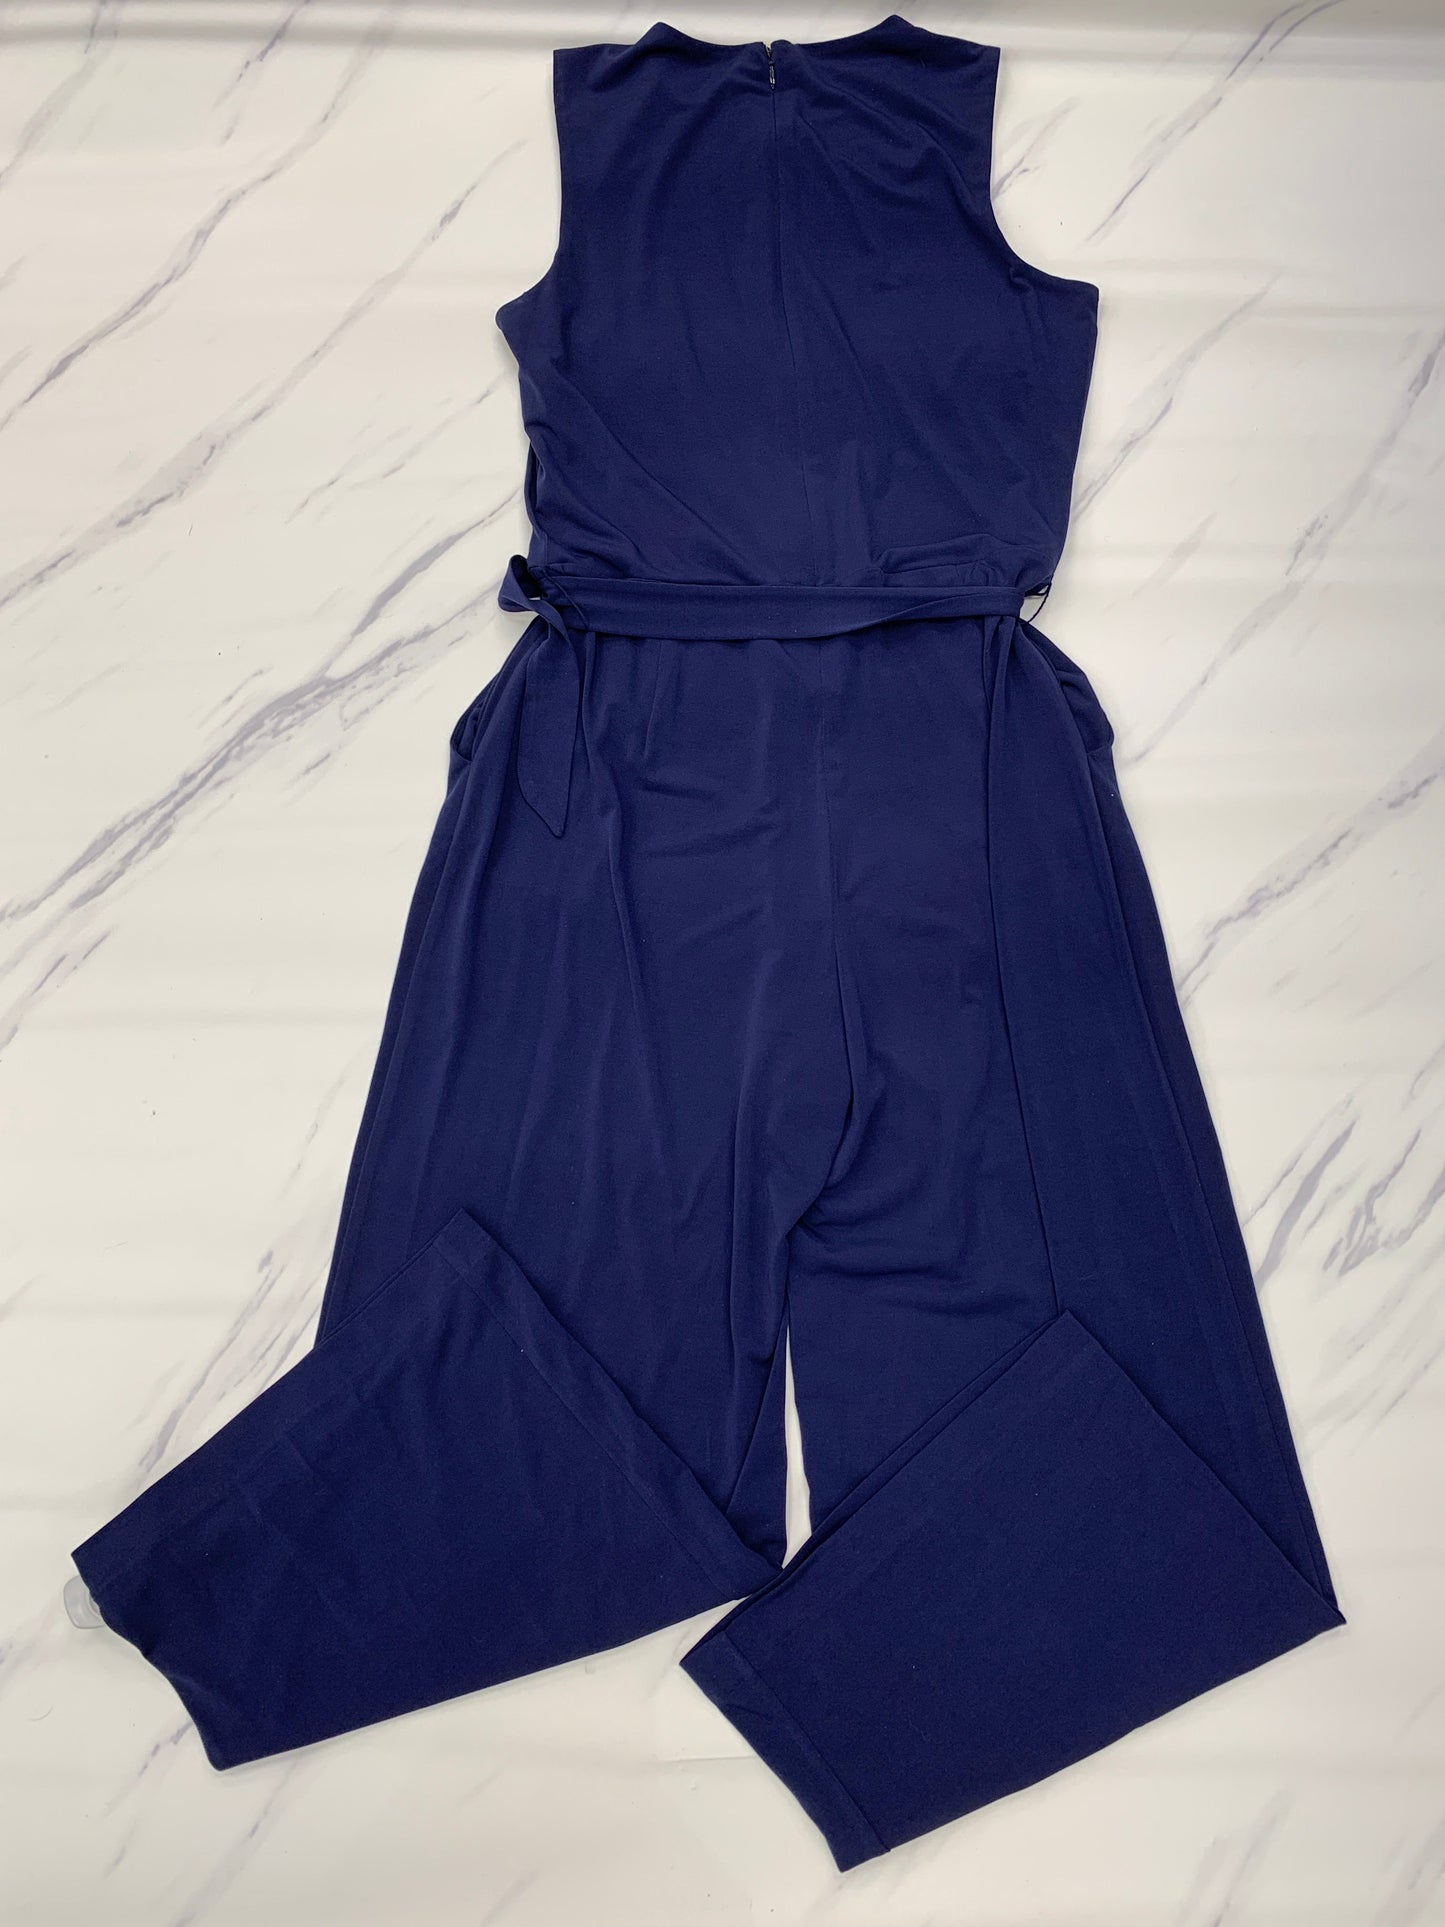 Blue Jumpsuit Designer Michael By Michael Kors, Size Xs